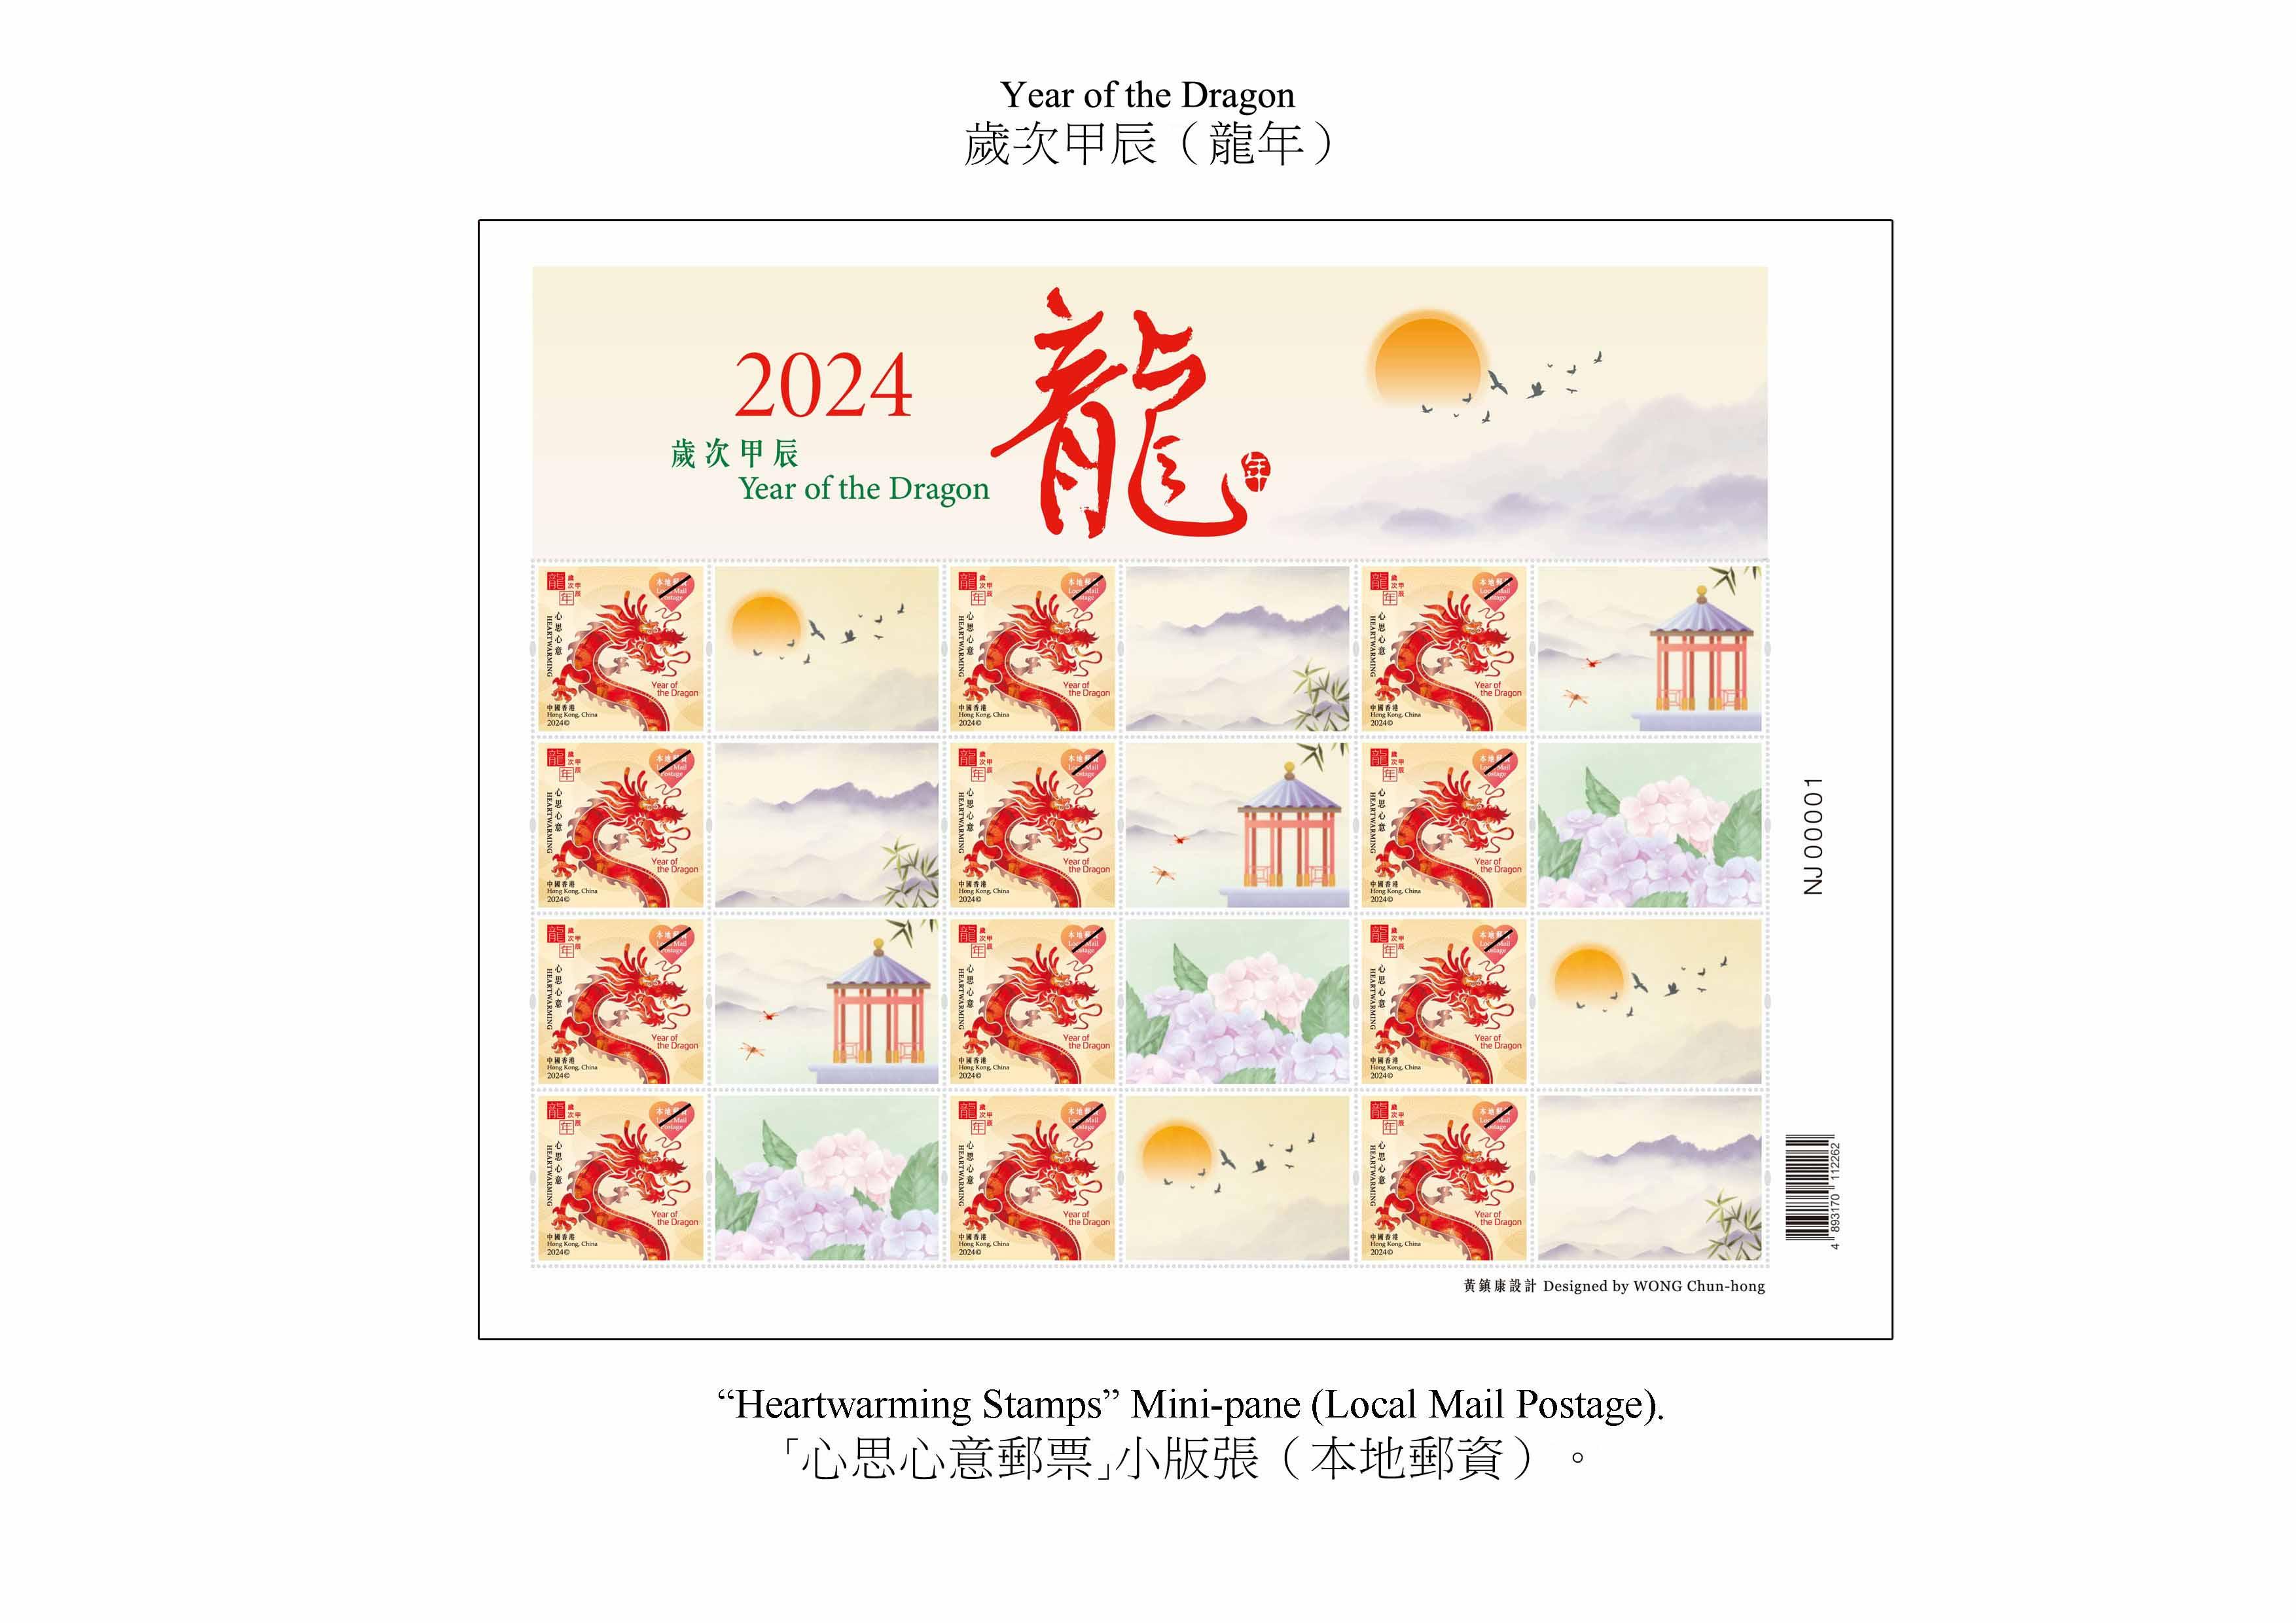 香港邮政二○二四年一月五日（星期五）发行以「岁次甲辰（龙年）」为题的特别邮票及相关集邮品。图示「心思心意邮票」小版张 （本地邮资）。